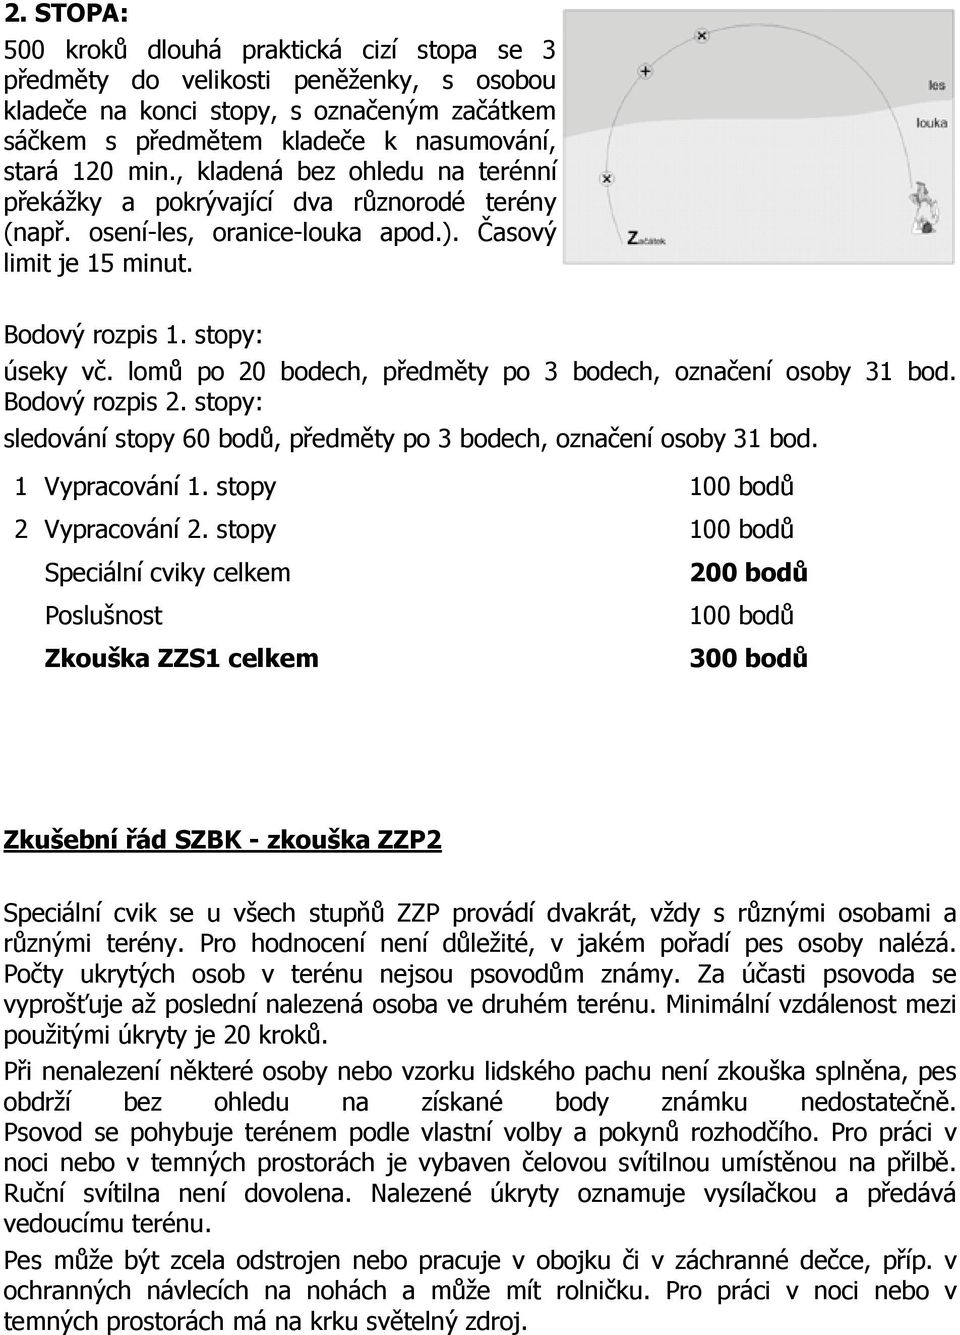 Zkušební řád SZBK - všeobecná ustanovení - PDF Stažení zdarma